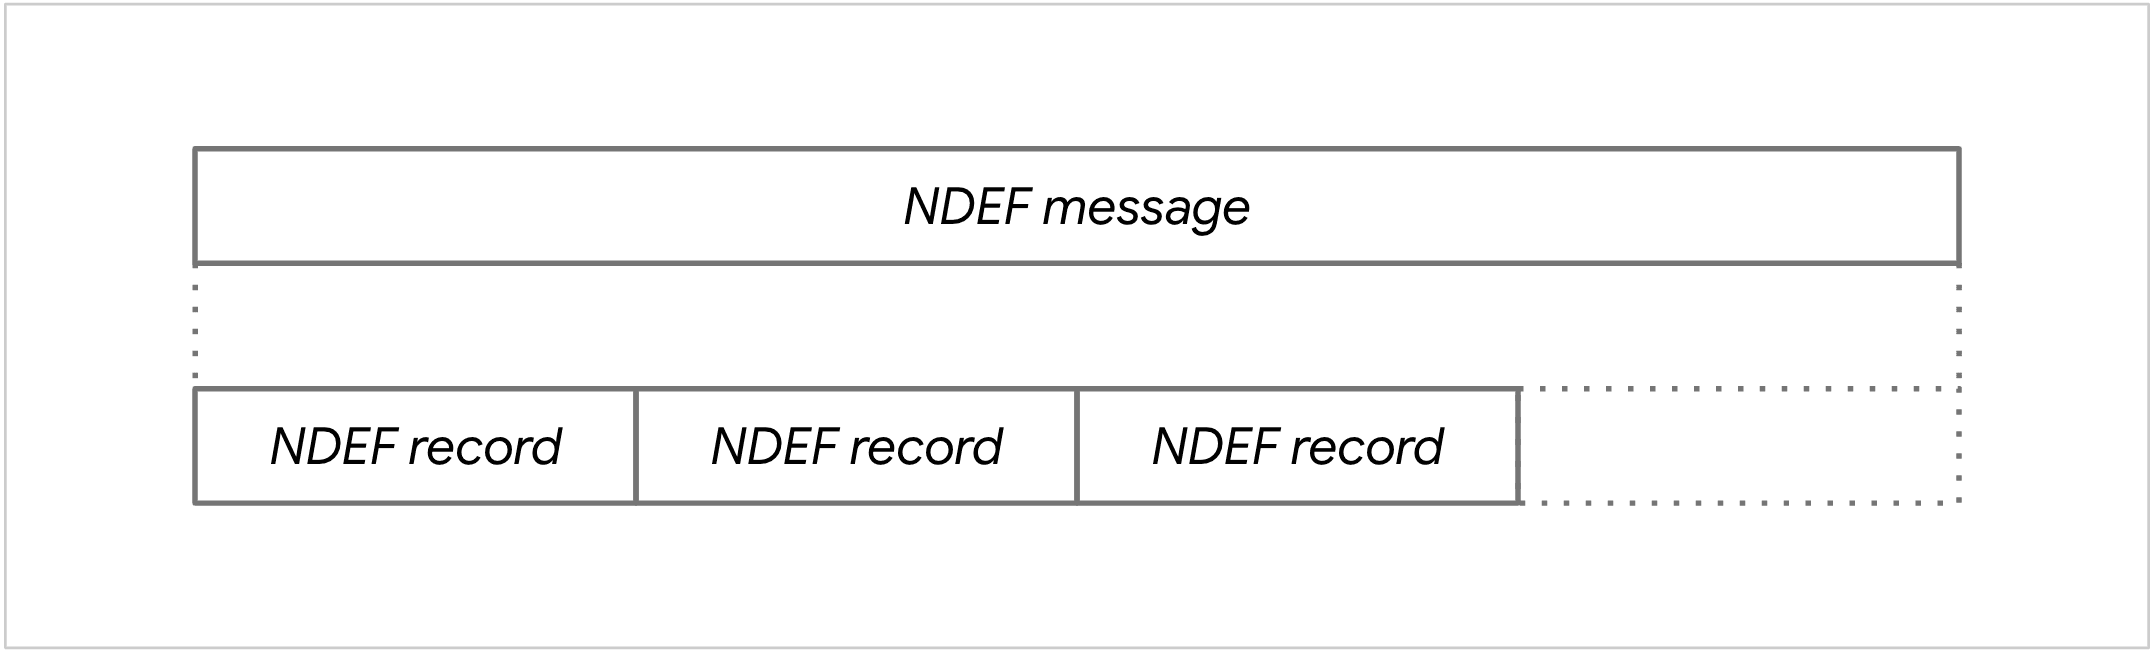 NDEF 메시지 다이어그램